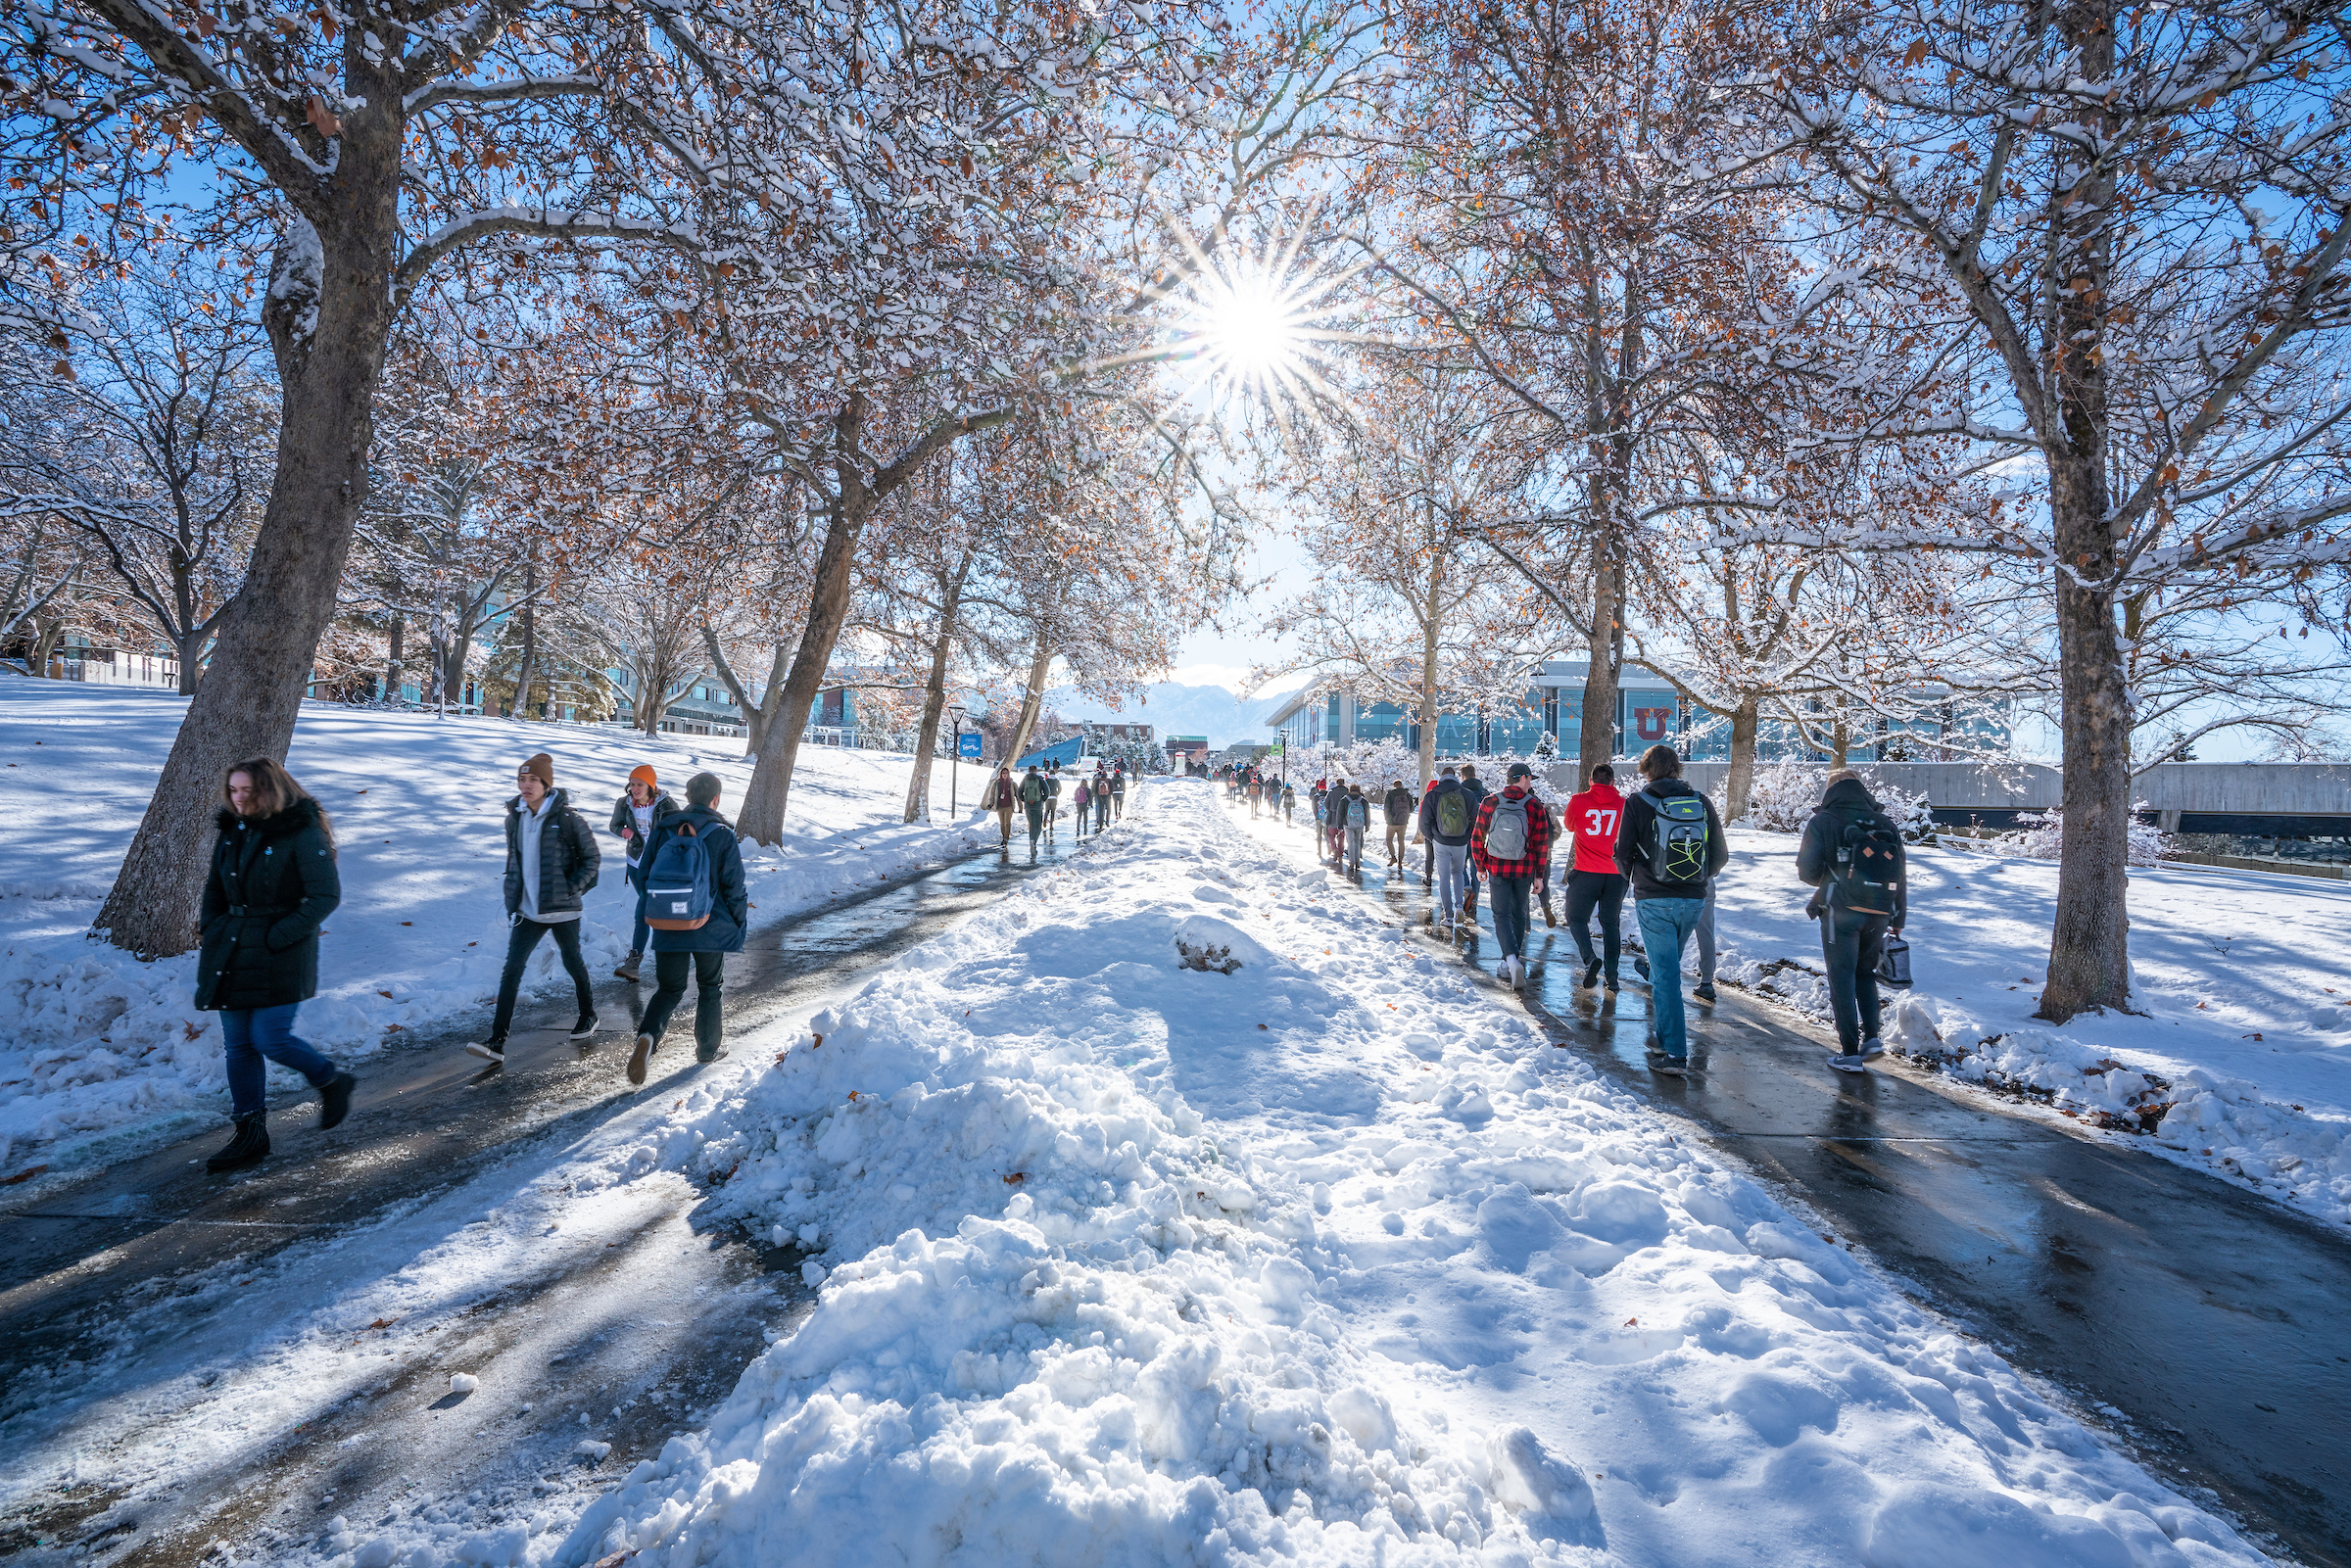 snowy sidewalk on the university of utah campus